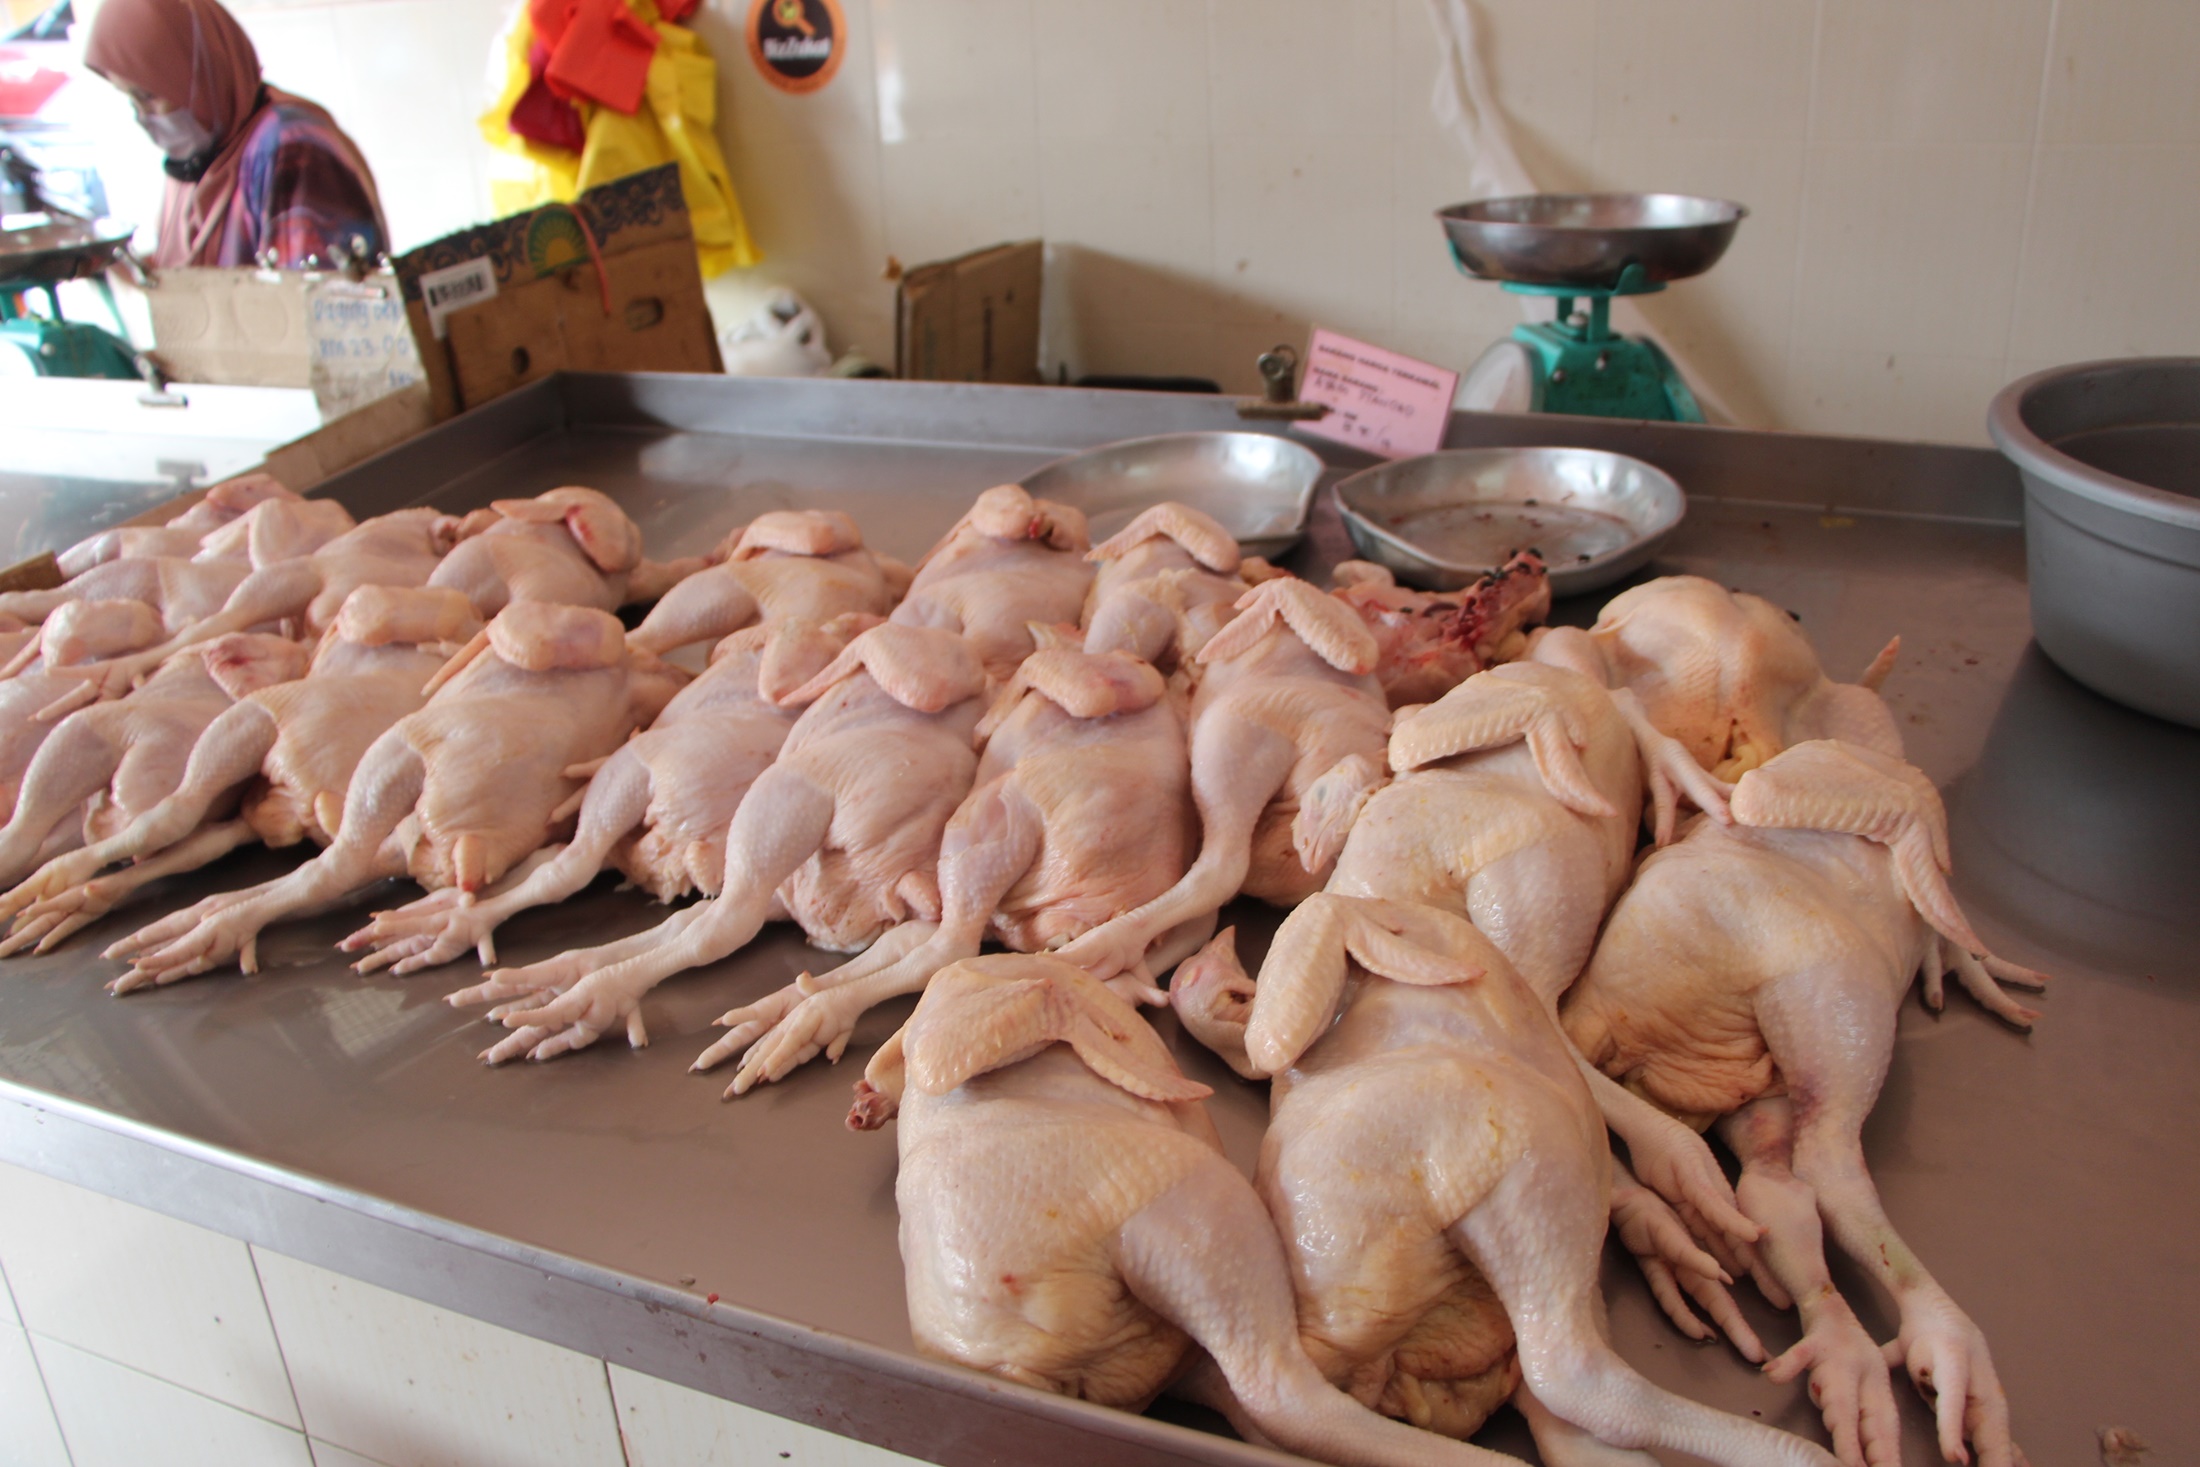 鸡贩应对肉鸡短缺限量供应餐饮业者- 地方- 东海岸| 星洲网Sin Chew Daily Malaysia Latest News and  Headlines